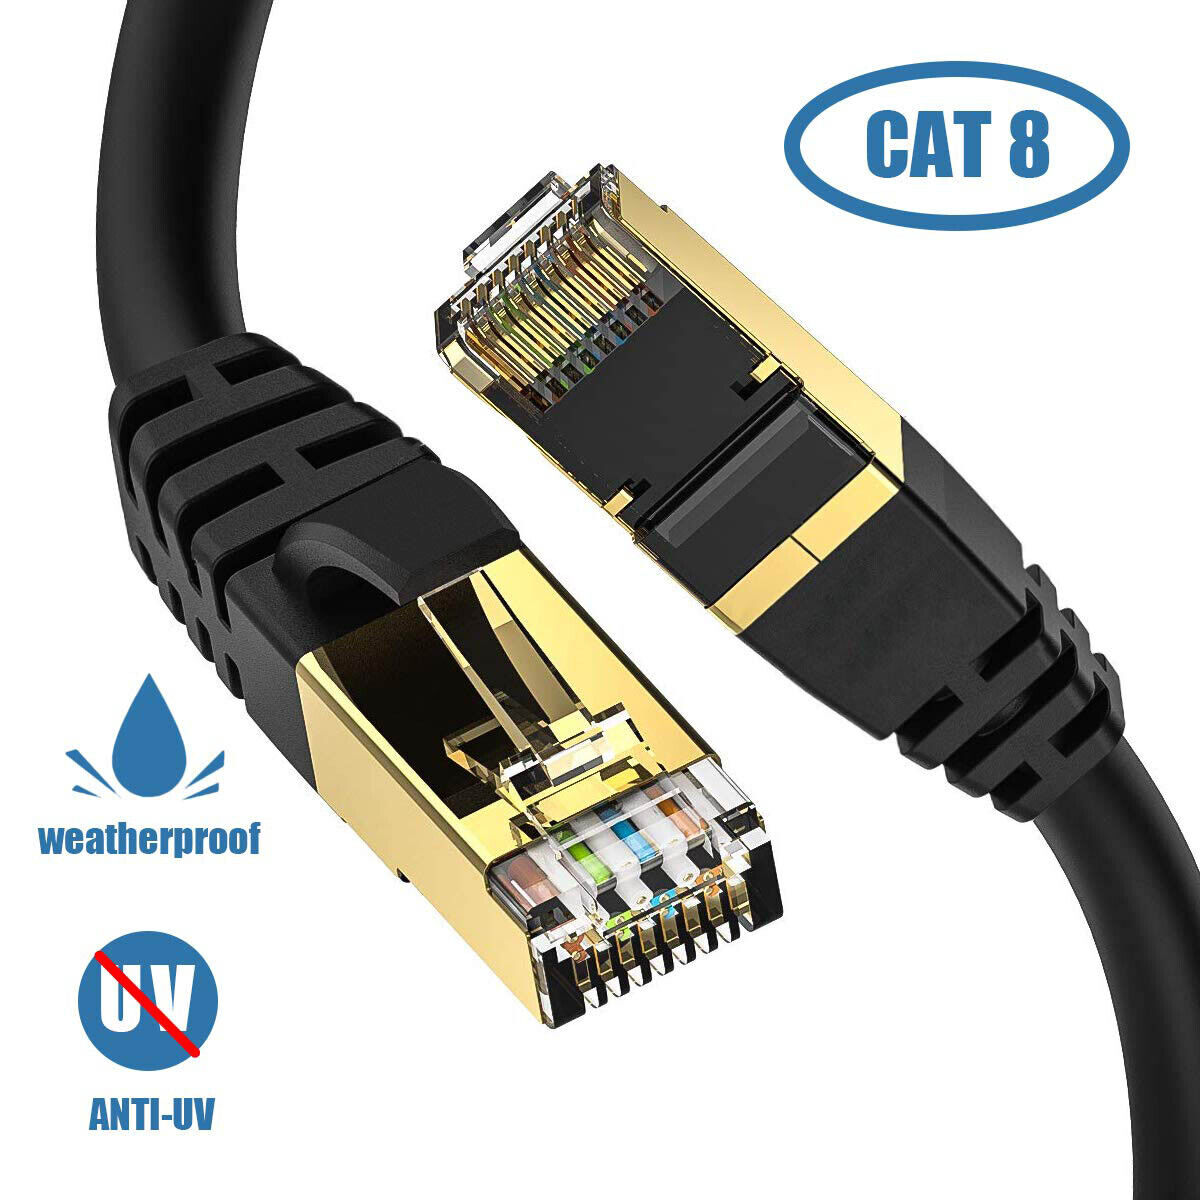 RJ45 LAN Cable CAT8 Ethernet Black F/FTP 6ft 10ft 15ft 25ft 30ft 50ft 60ft Lot